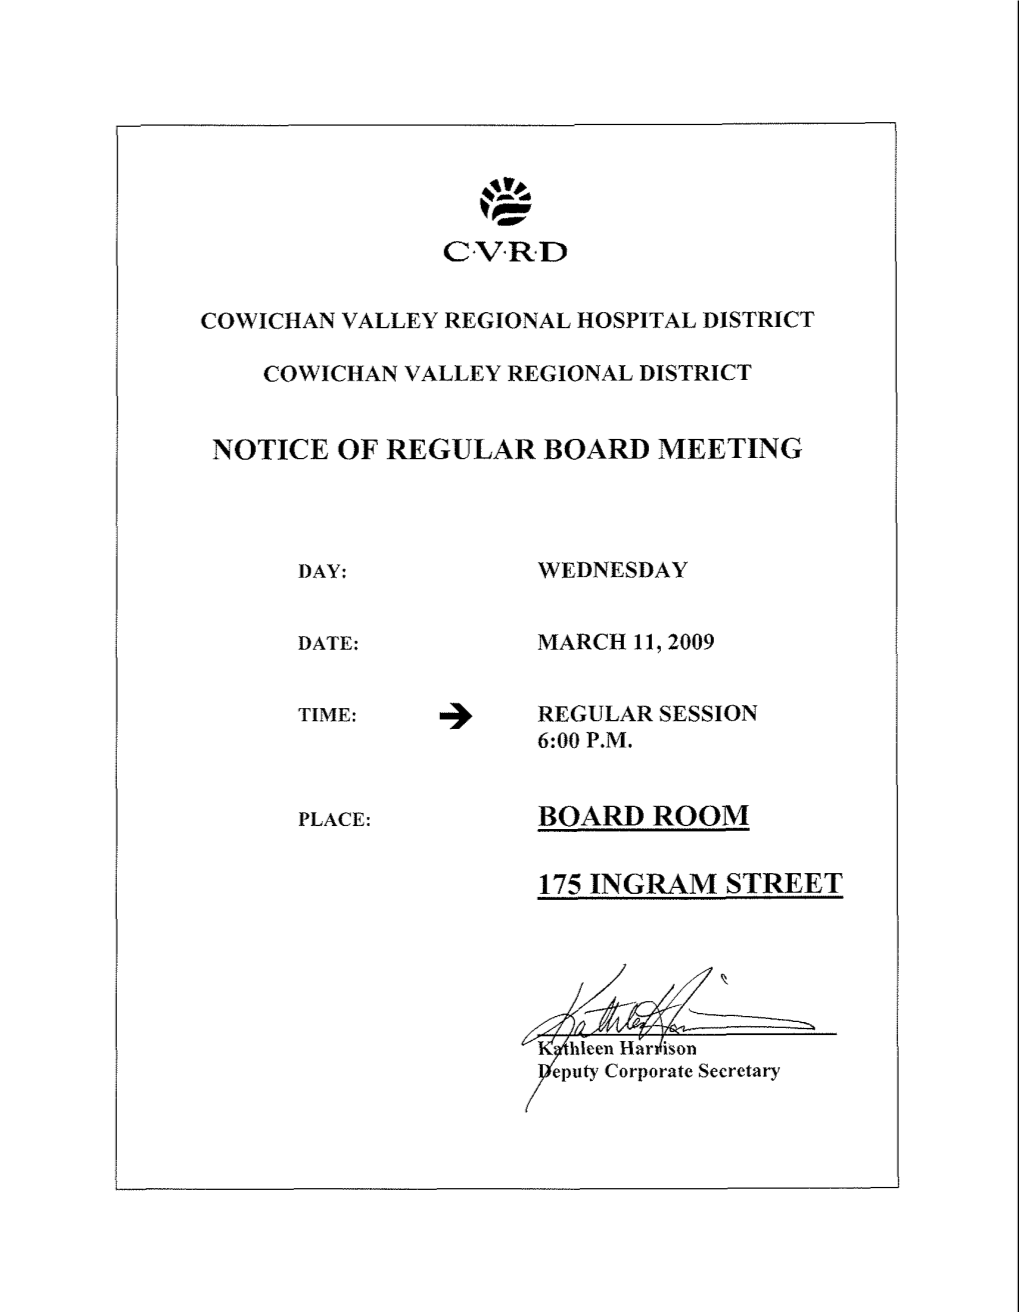 Notice of Regular Board Meeting I) Board Room 175